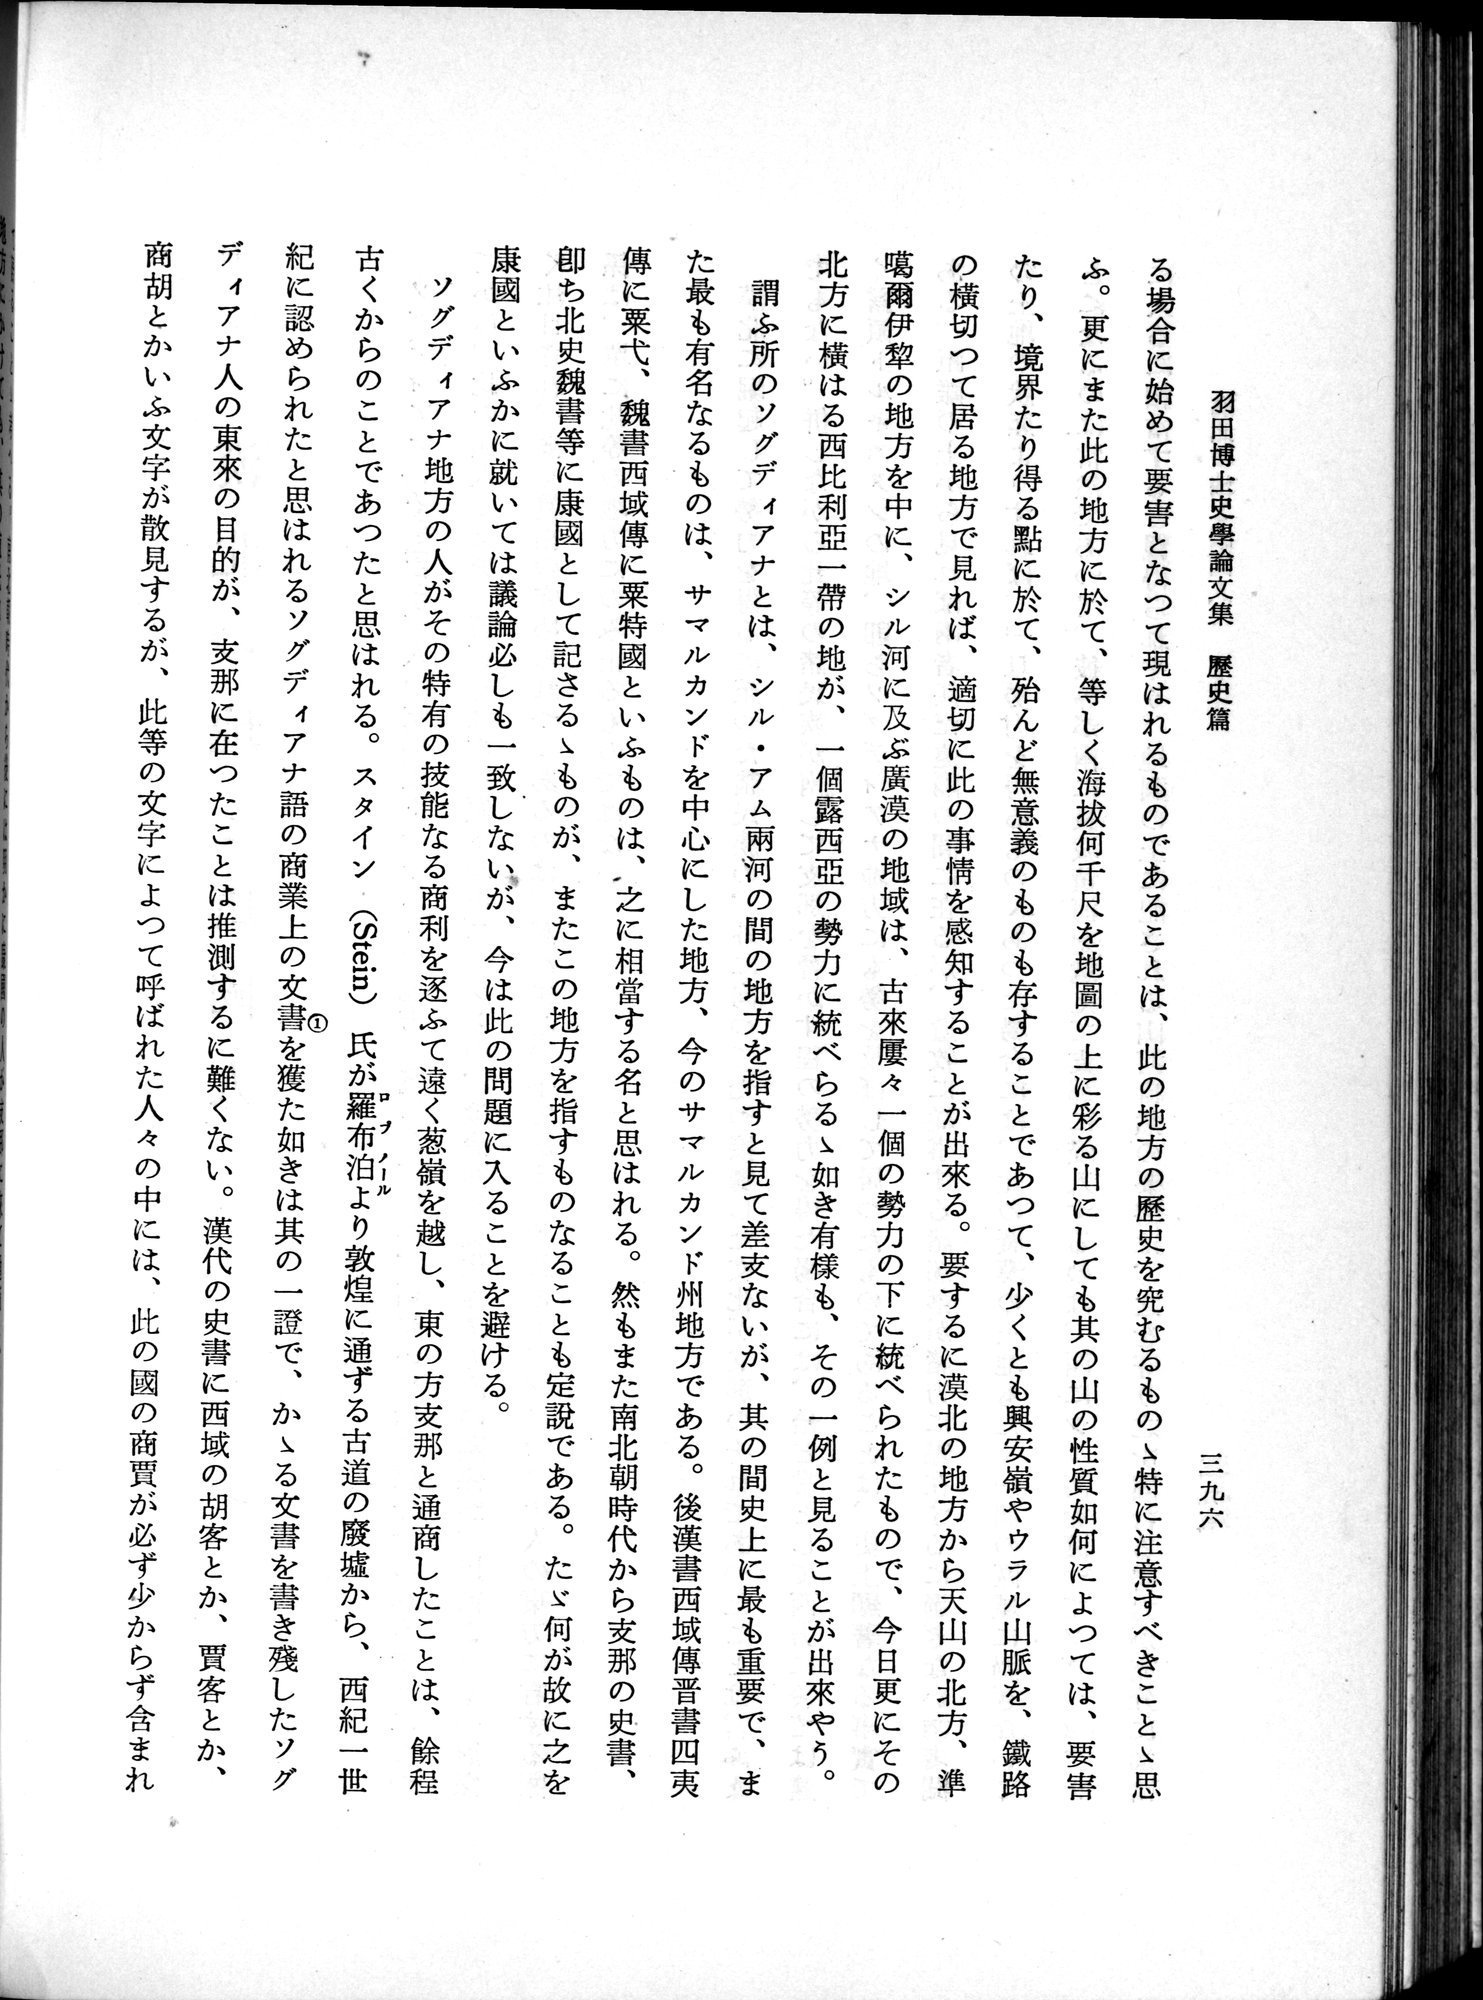 羽田博士史学論文集 : vol.1 / Page 434 (Grayscale High Resolution Image)